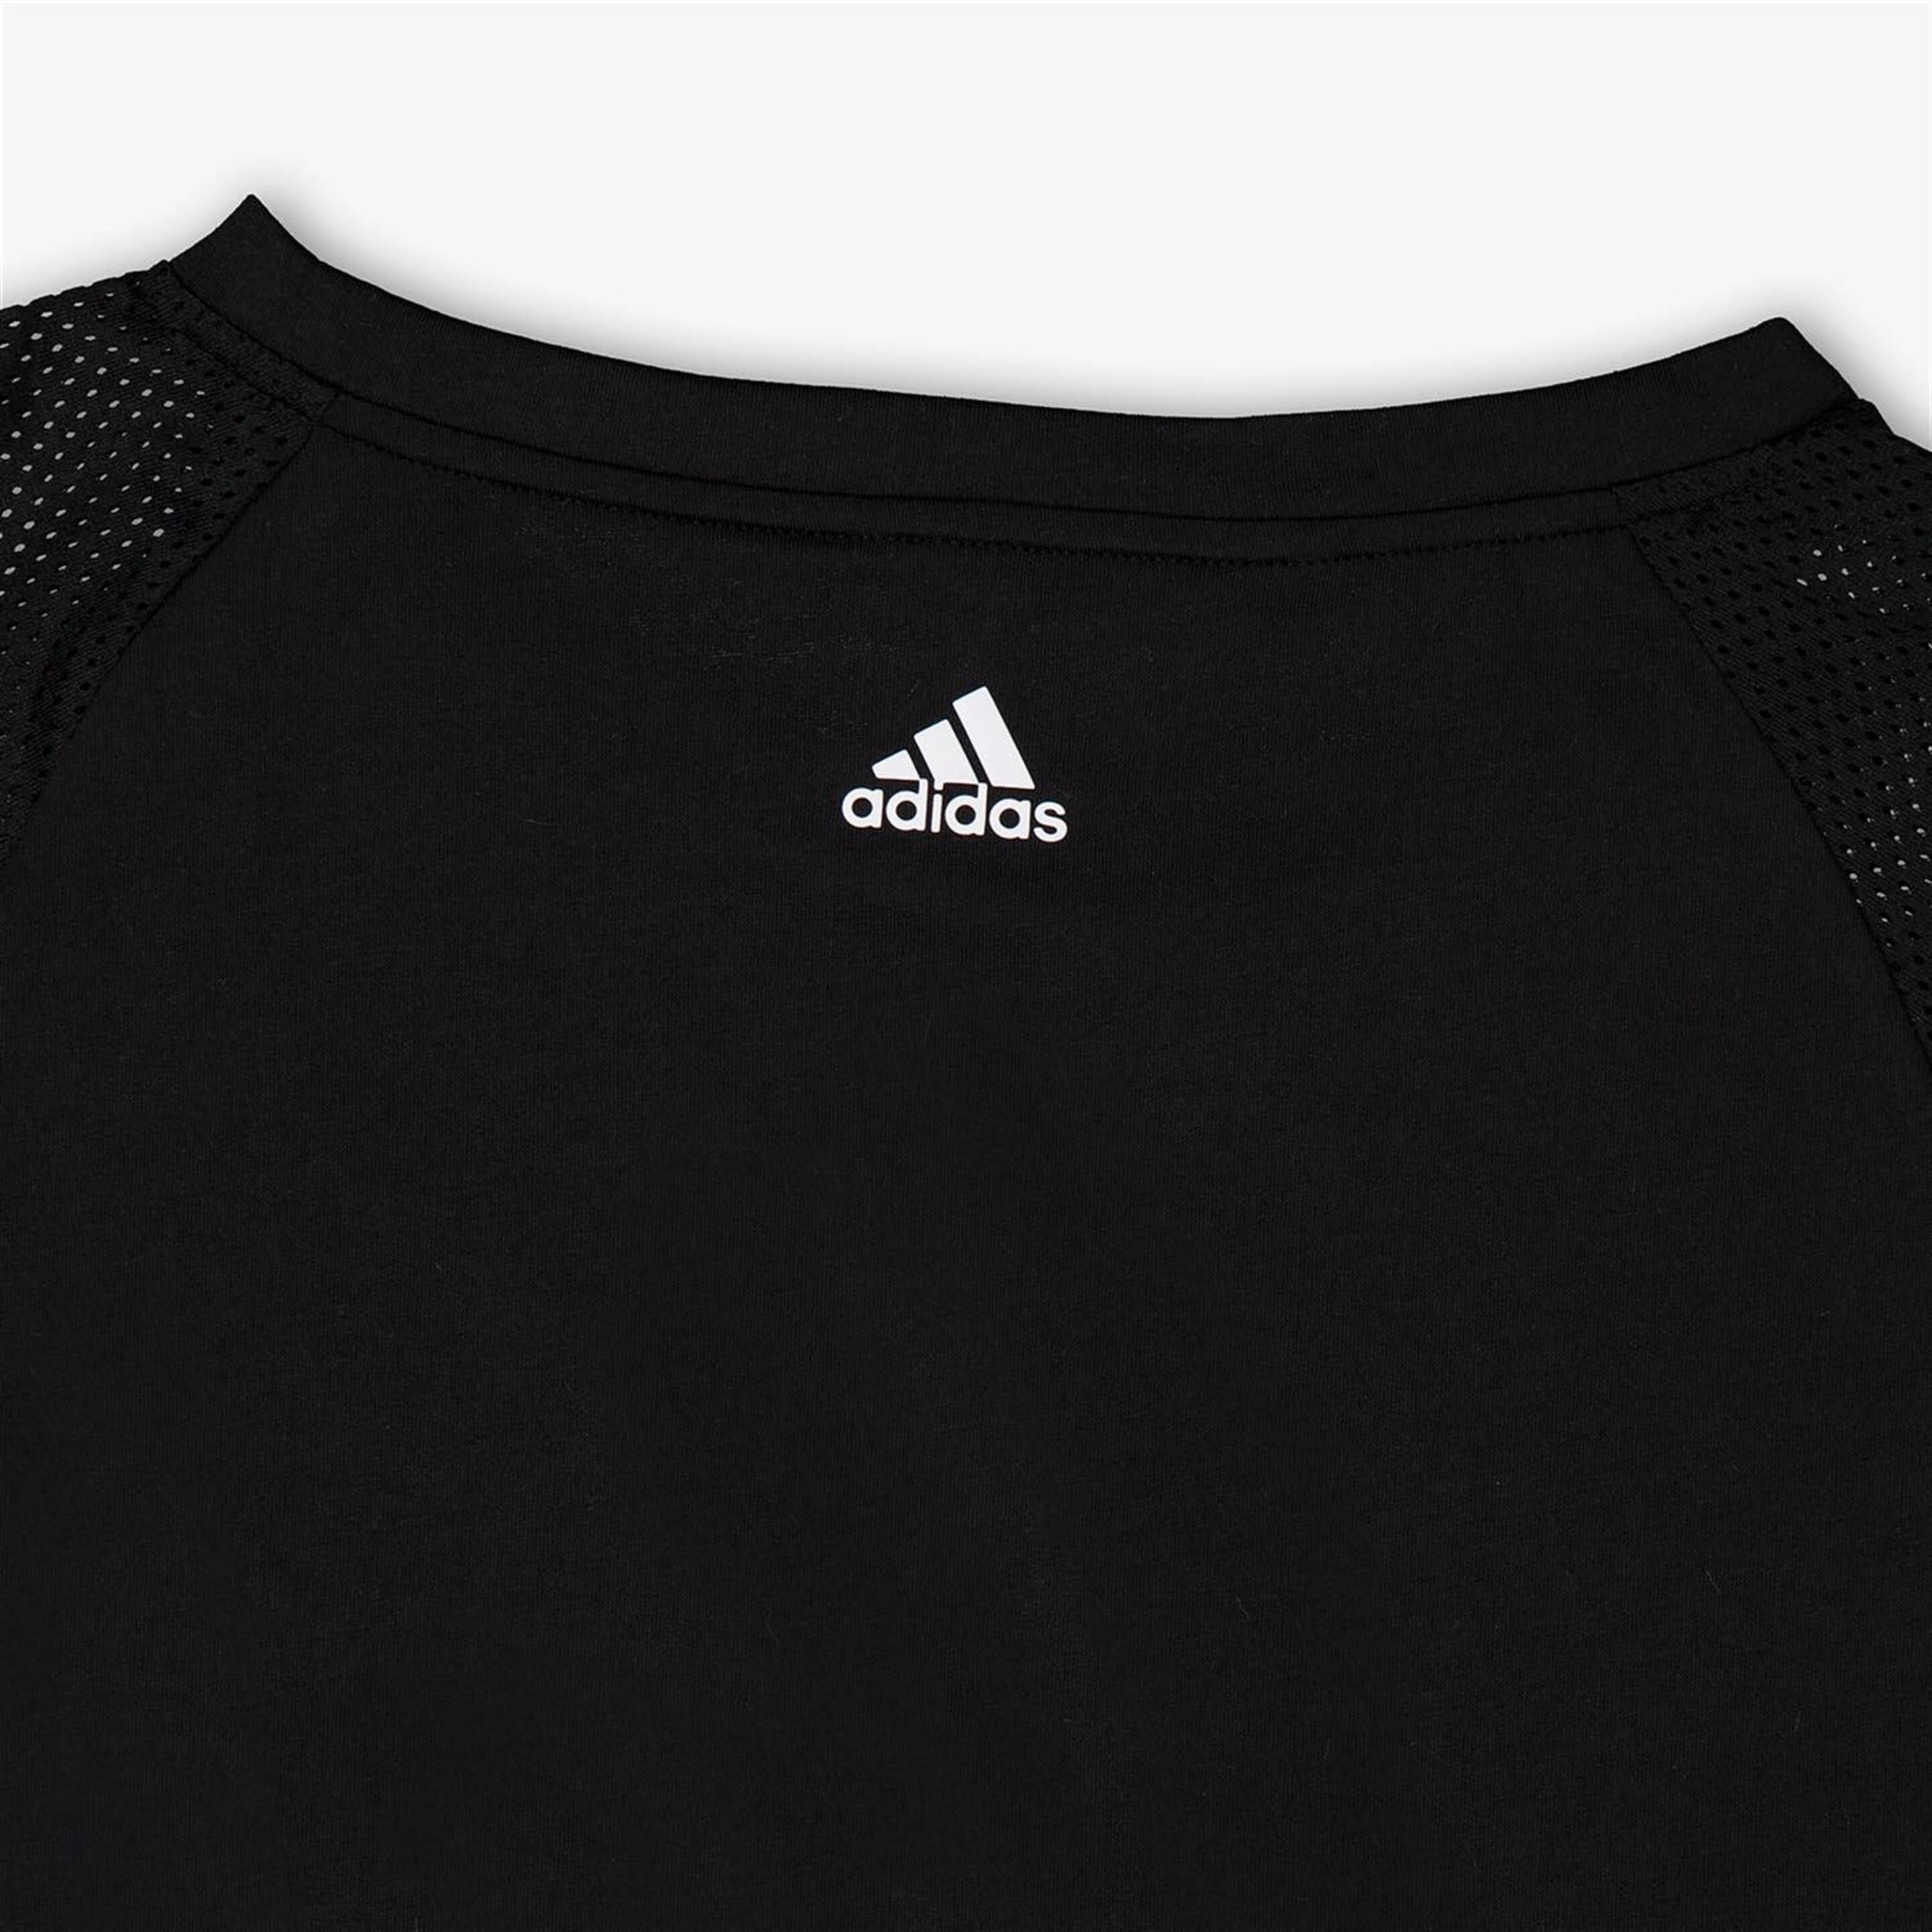 Top adidas - Negro - Camiseta Crop Top Niña